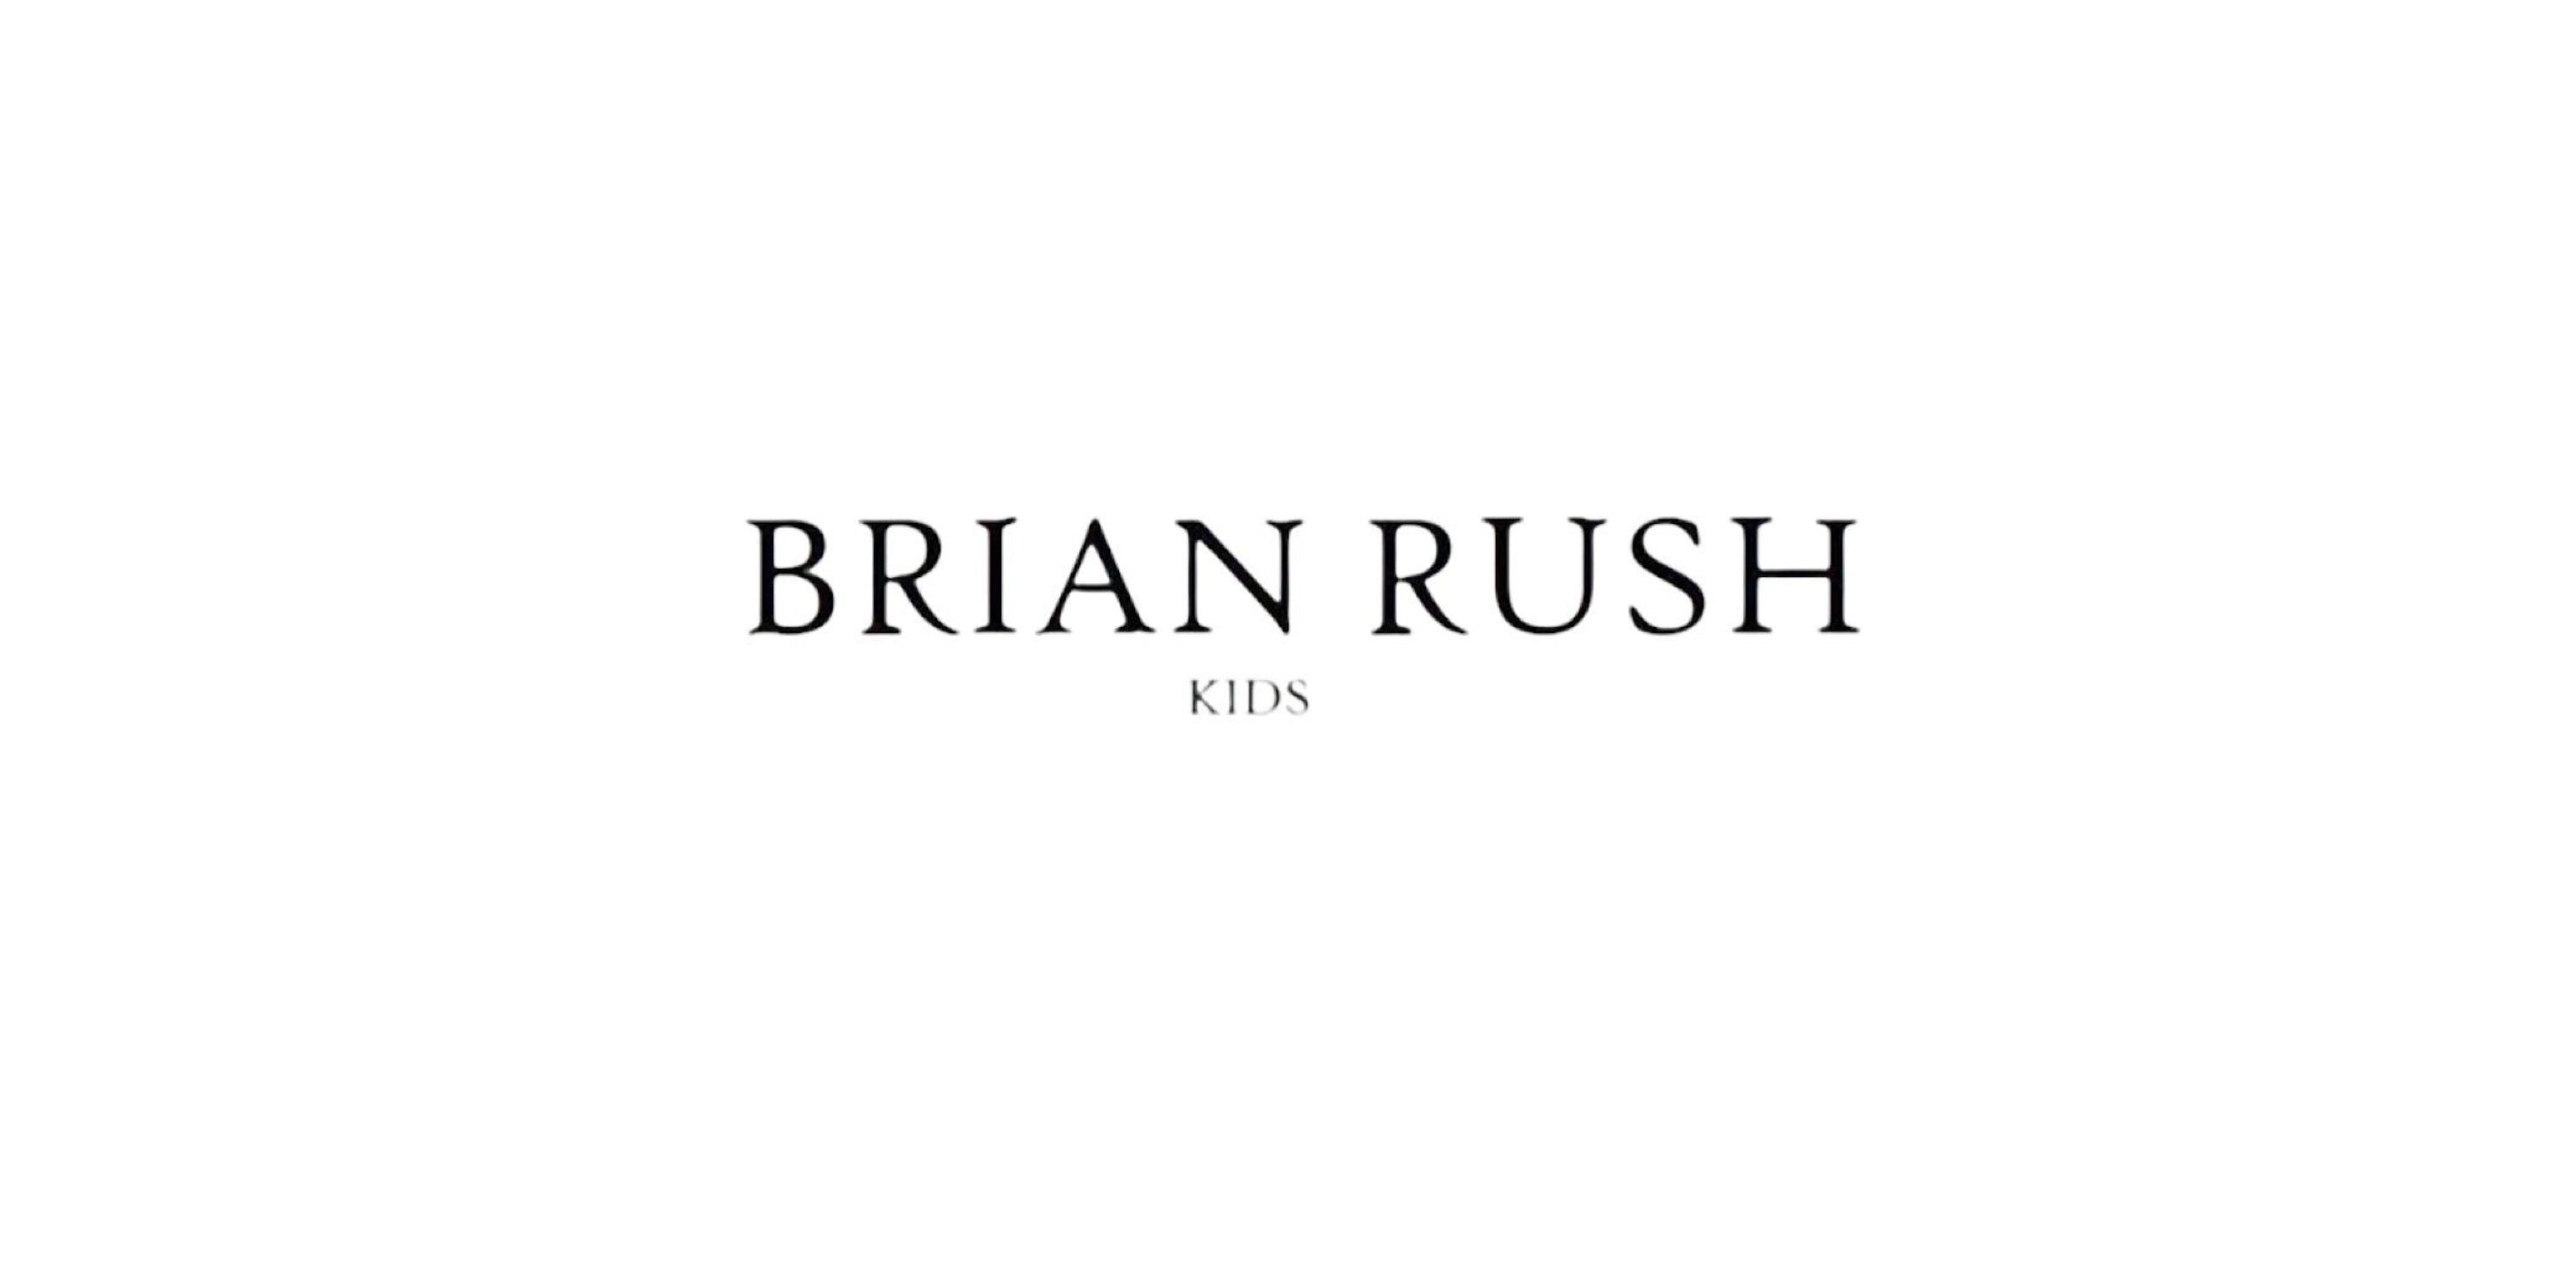 Luxury kids - brand: Brian rush